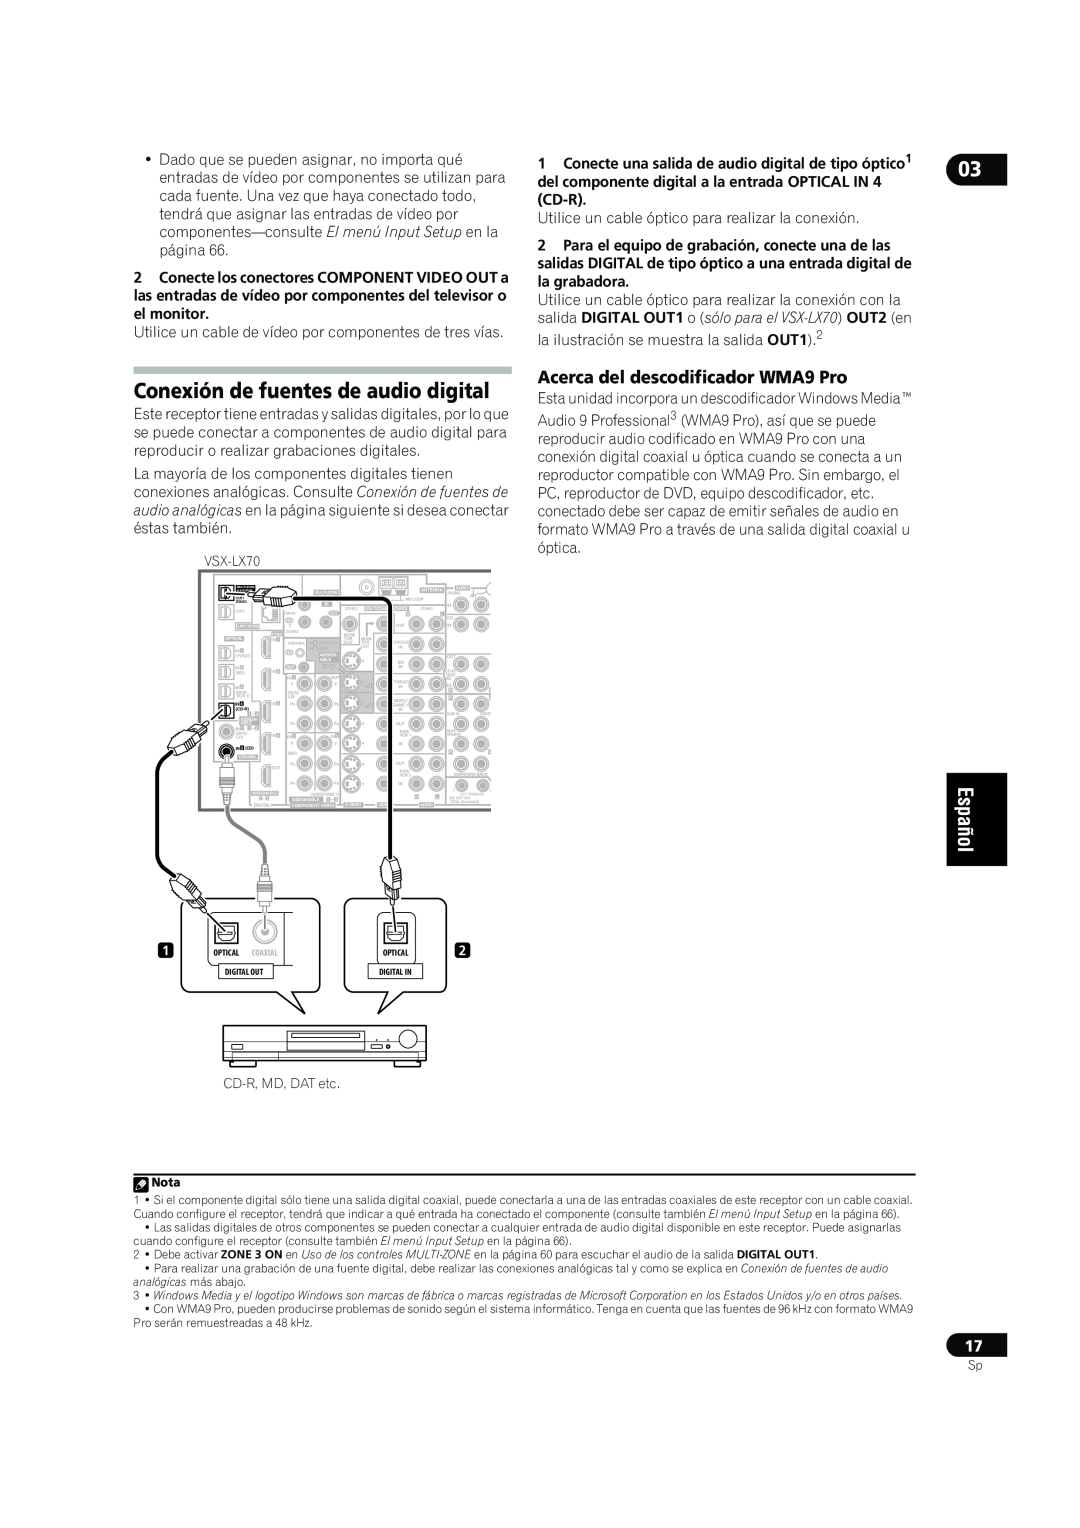 Bernina VSX-LX70, VSX-LX60 manual Conexión de fuentes de audio digital, Acerca del descodificador WMA9 Pro 